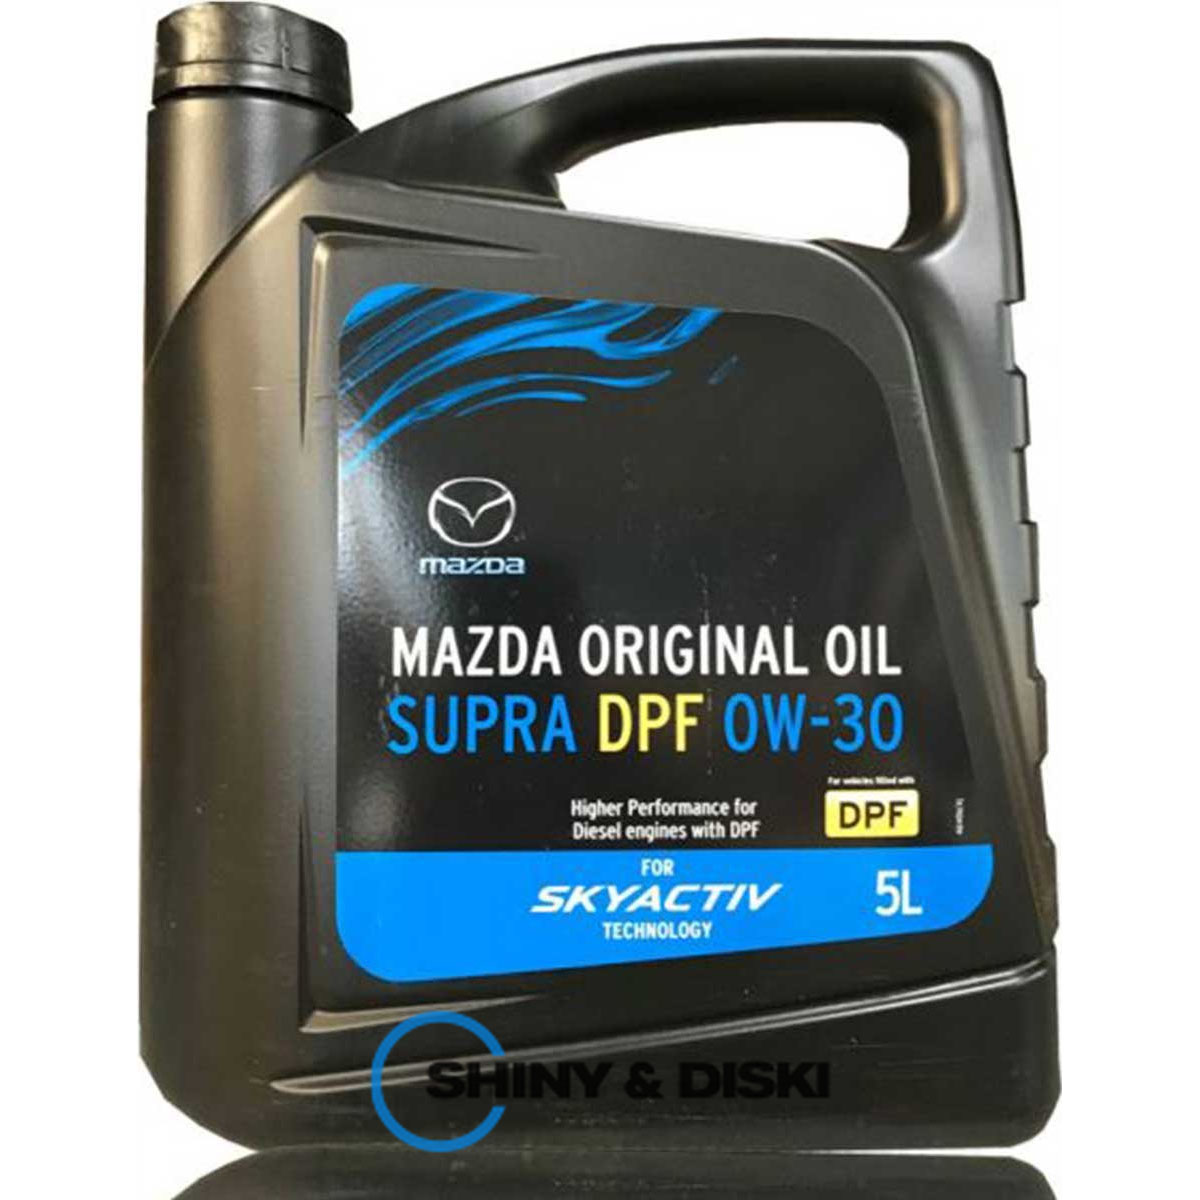 mazda original oil supra dpf 0w-30 (5л)